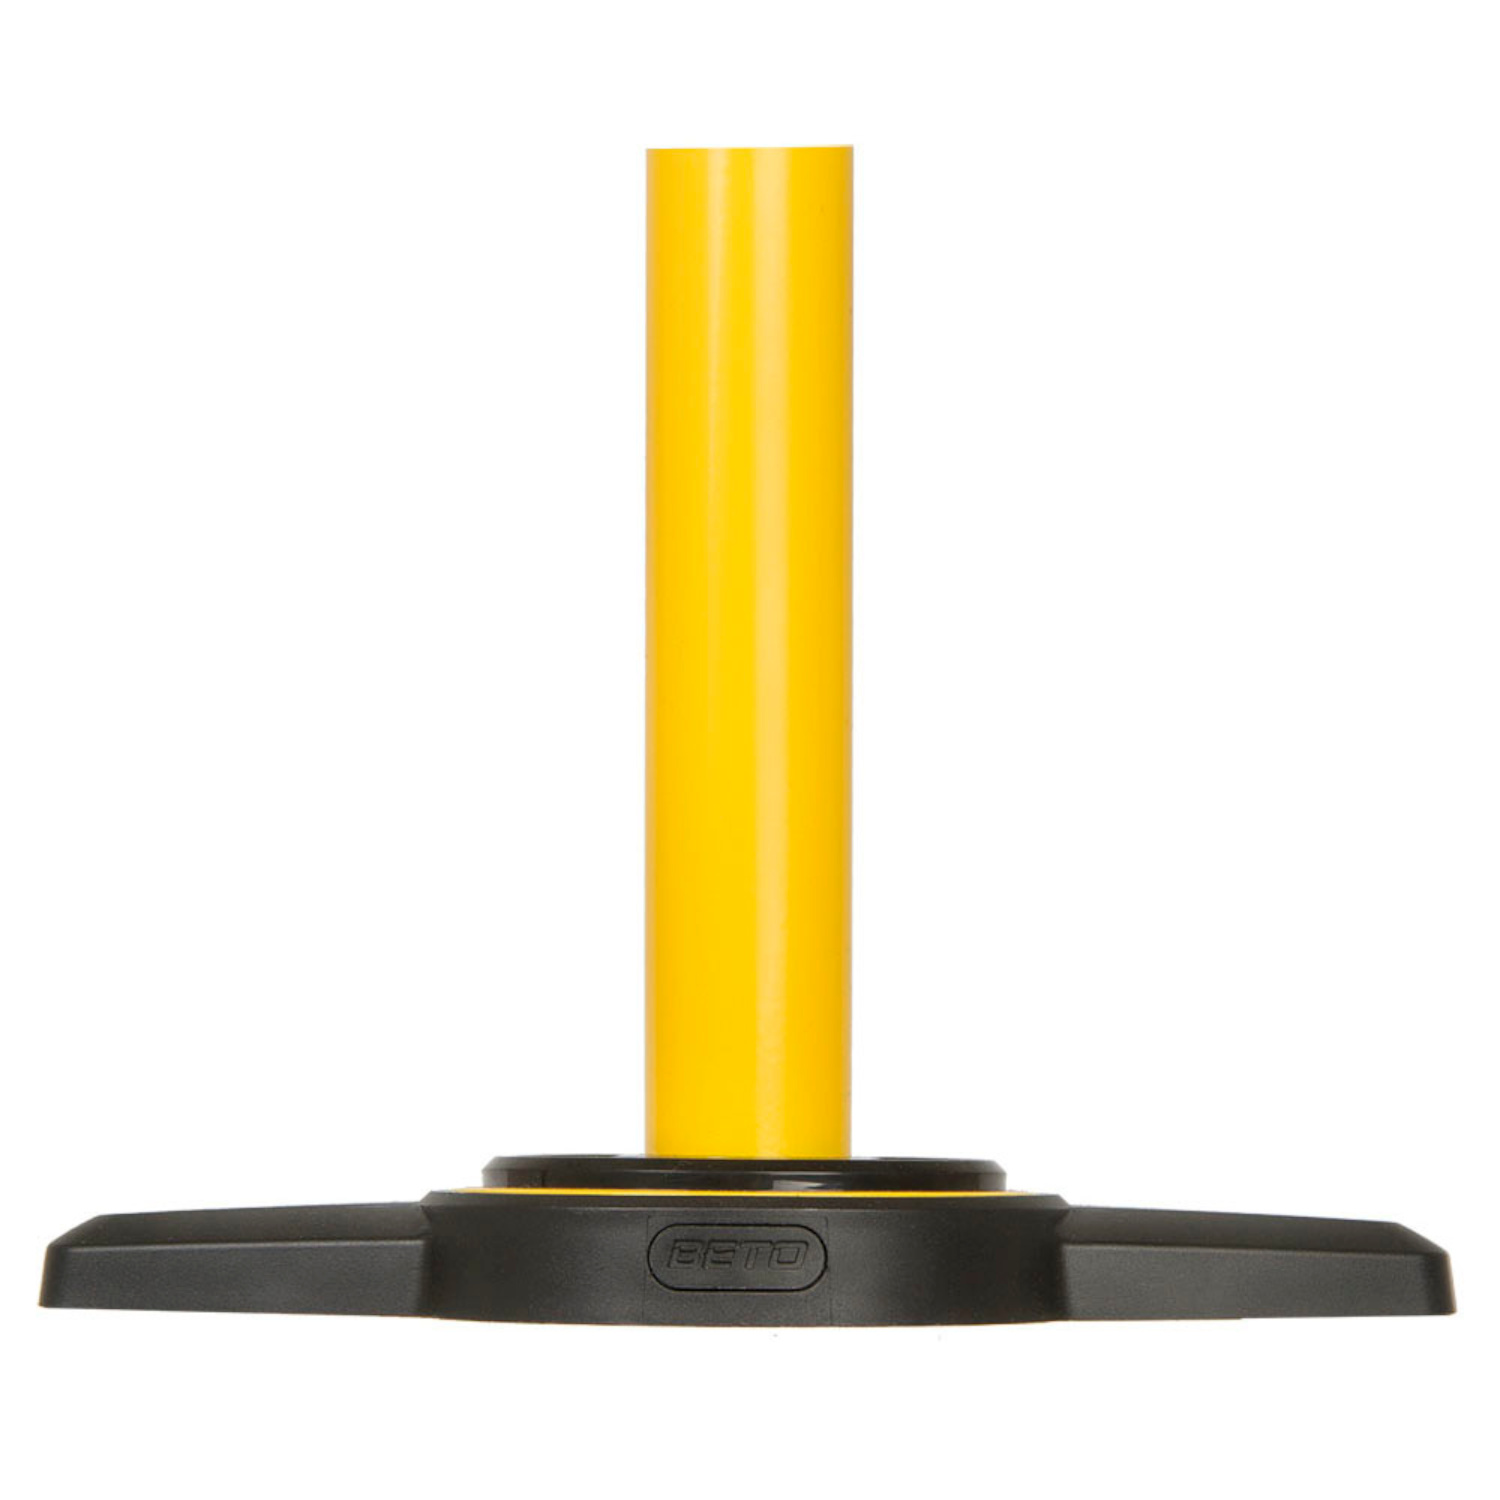 Stand-Pumpe BETO Stahl Award 2014 in gelb, mit Manometer